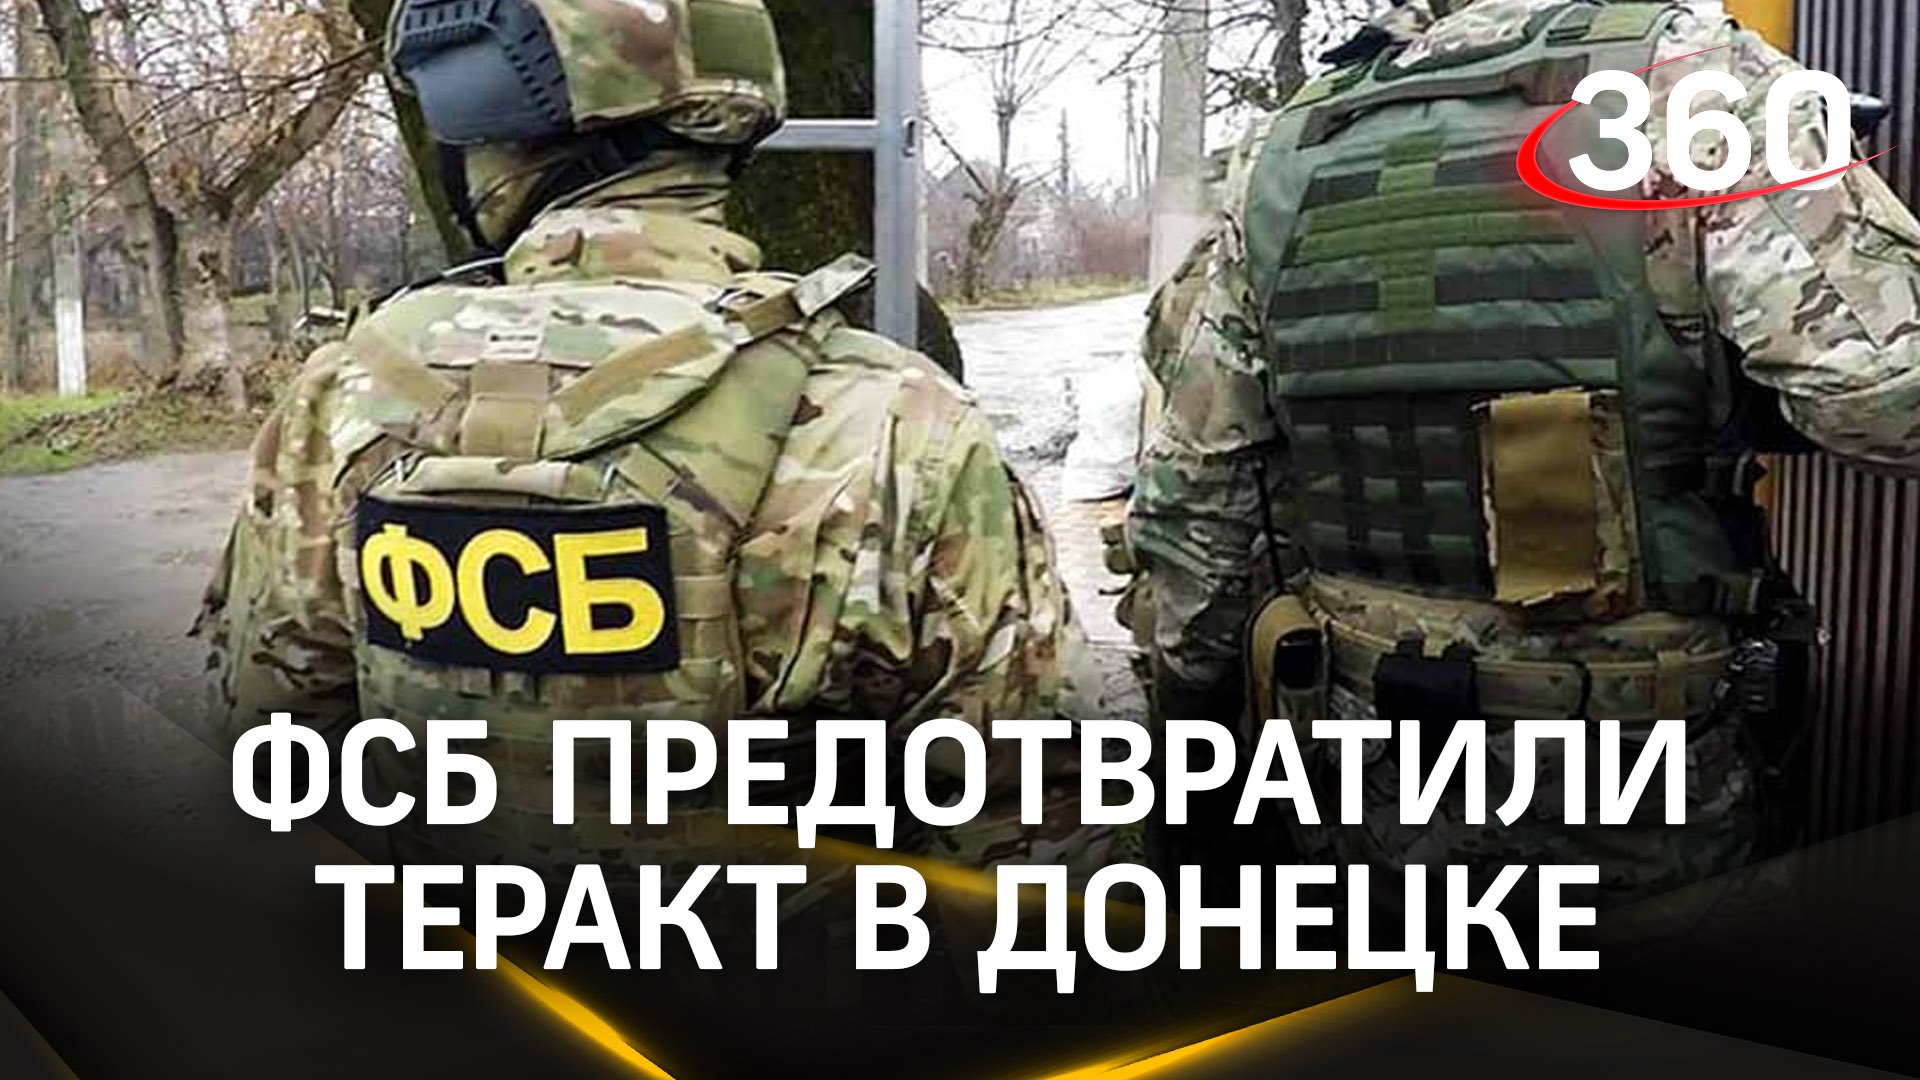 Штурмовал спецназ ФСБ: приезжие из Центральной Азии готовили взрывы в Донецке